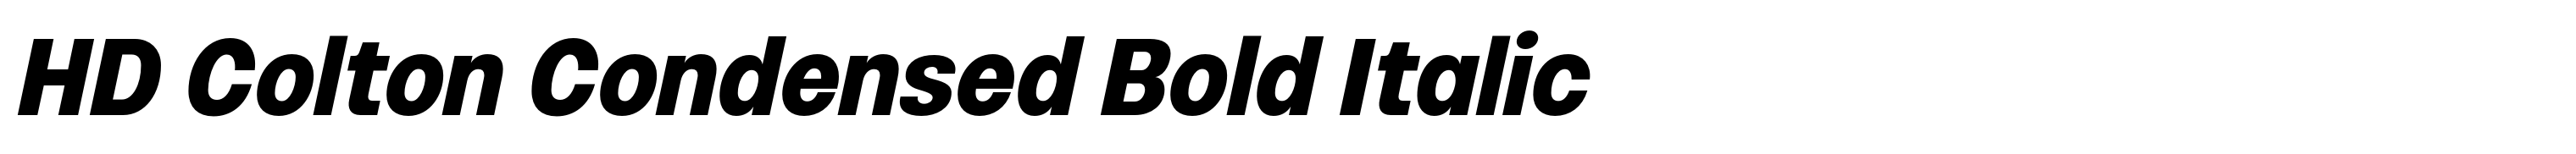 HD Colton Condensed Bold Italic